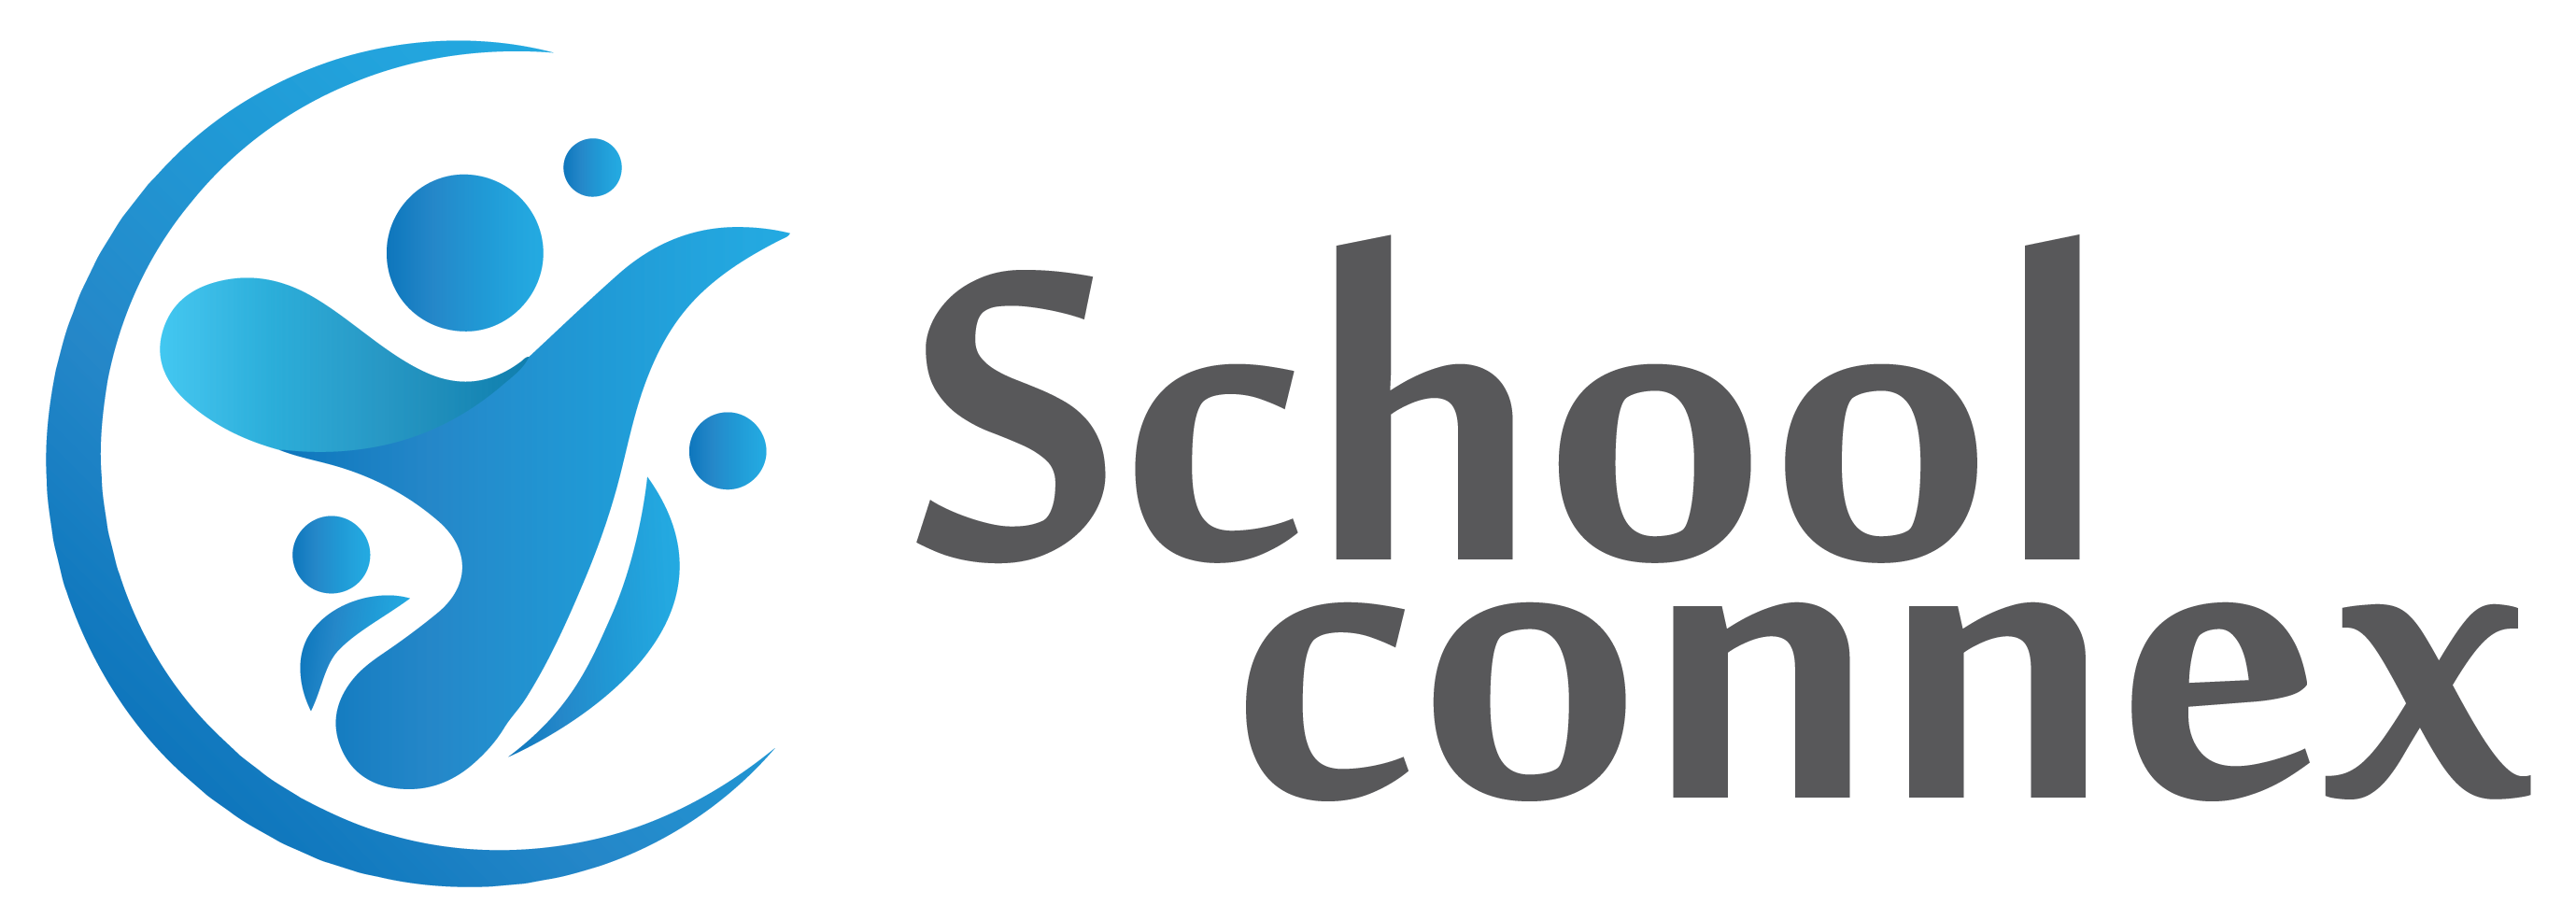 School Connex - Thailand's Best School Management Platform.